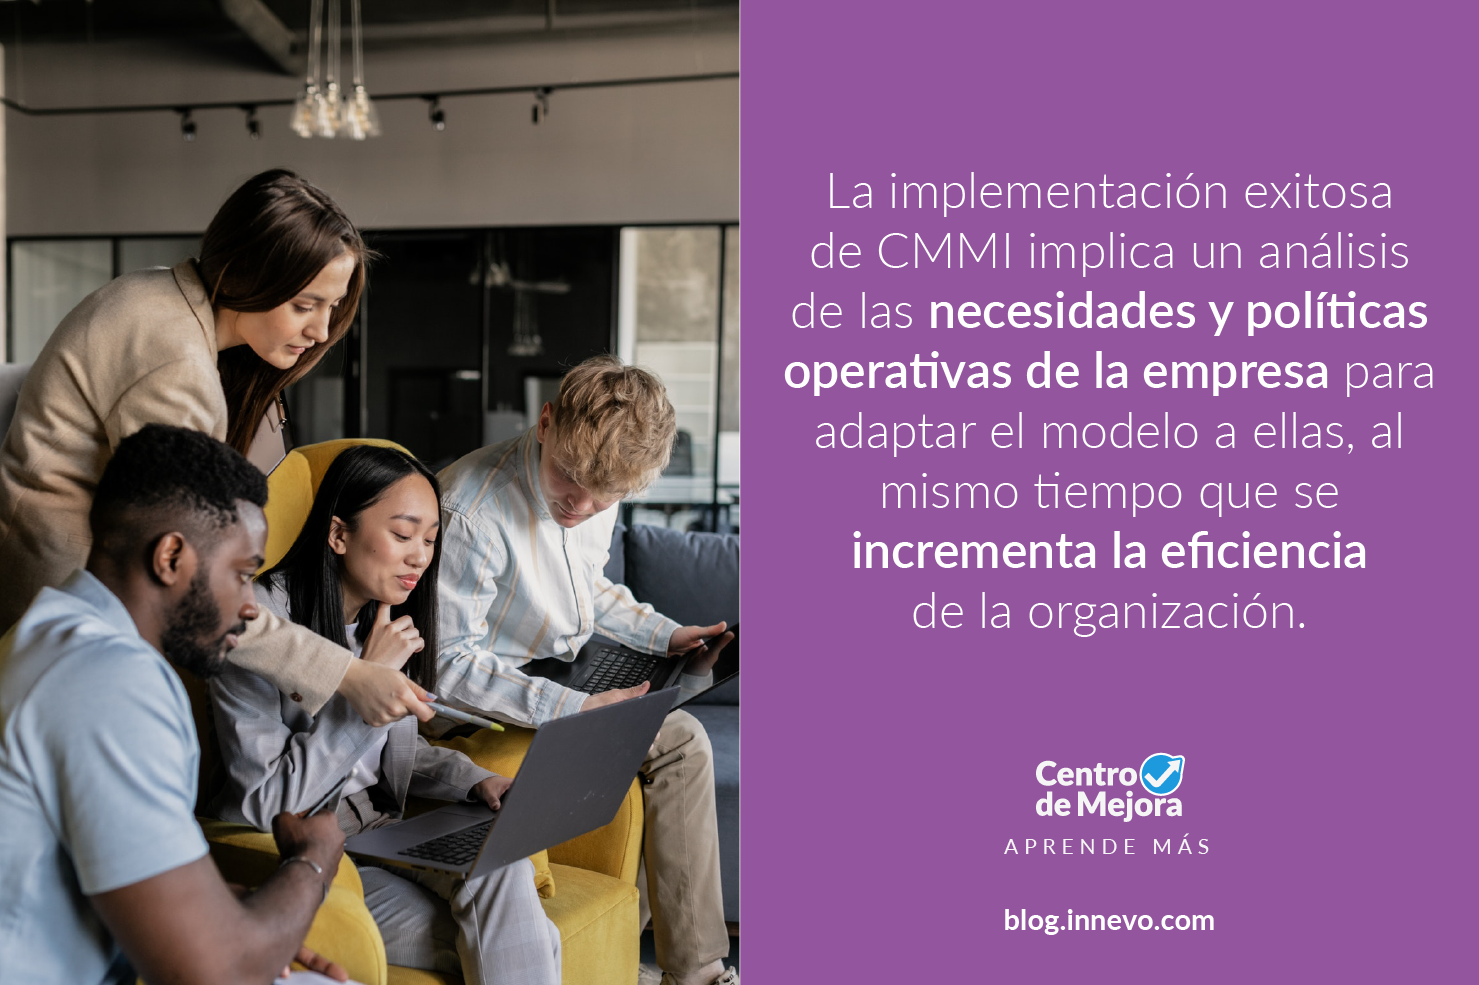 La implementación exitosa de CMMI implica un análisis de las necesidades y políticas operativas de la empresa para adaptar el modelo a ellas, al mismo tiempo que se incrementa la eficiencia de la organización.